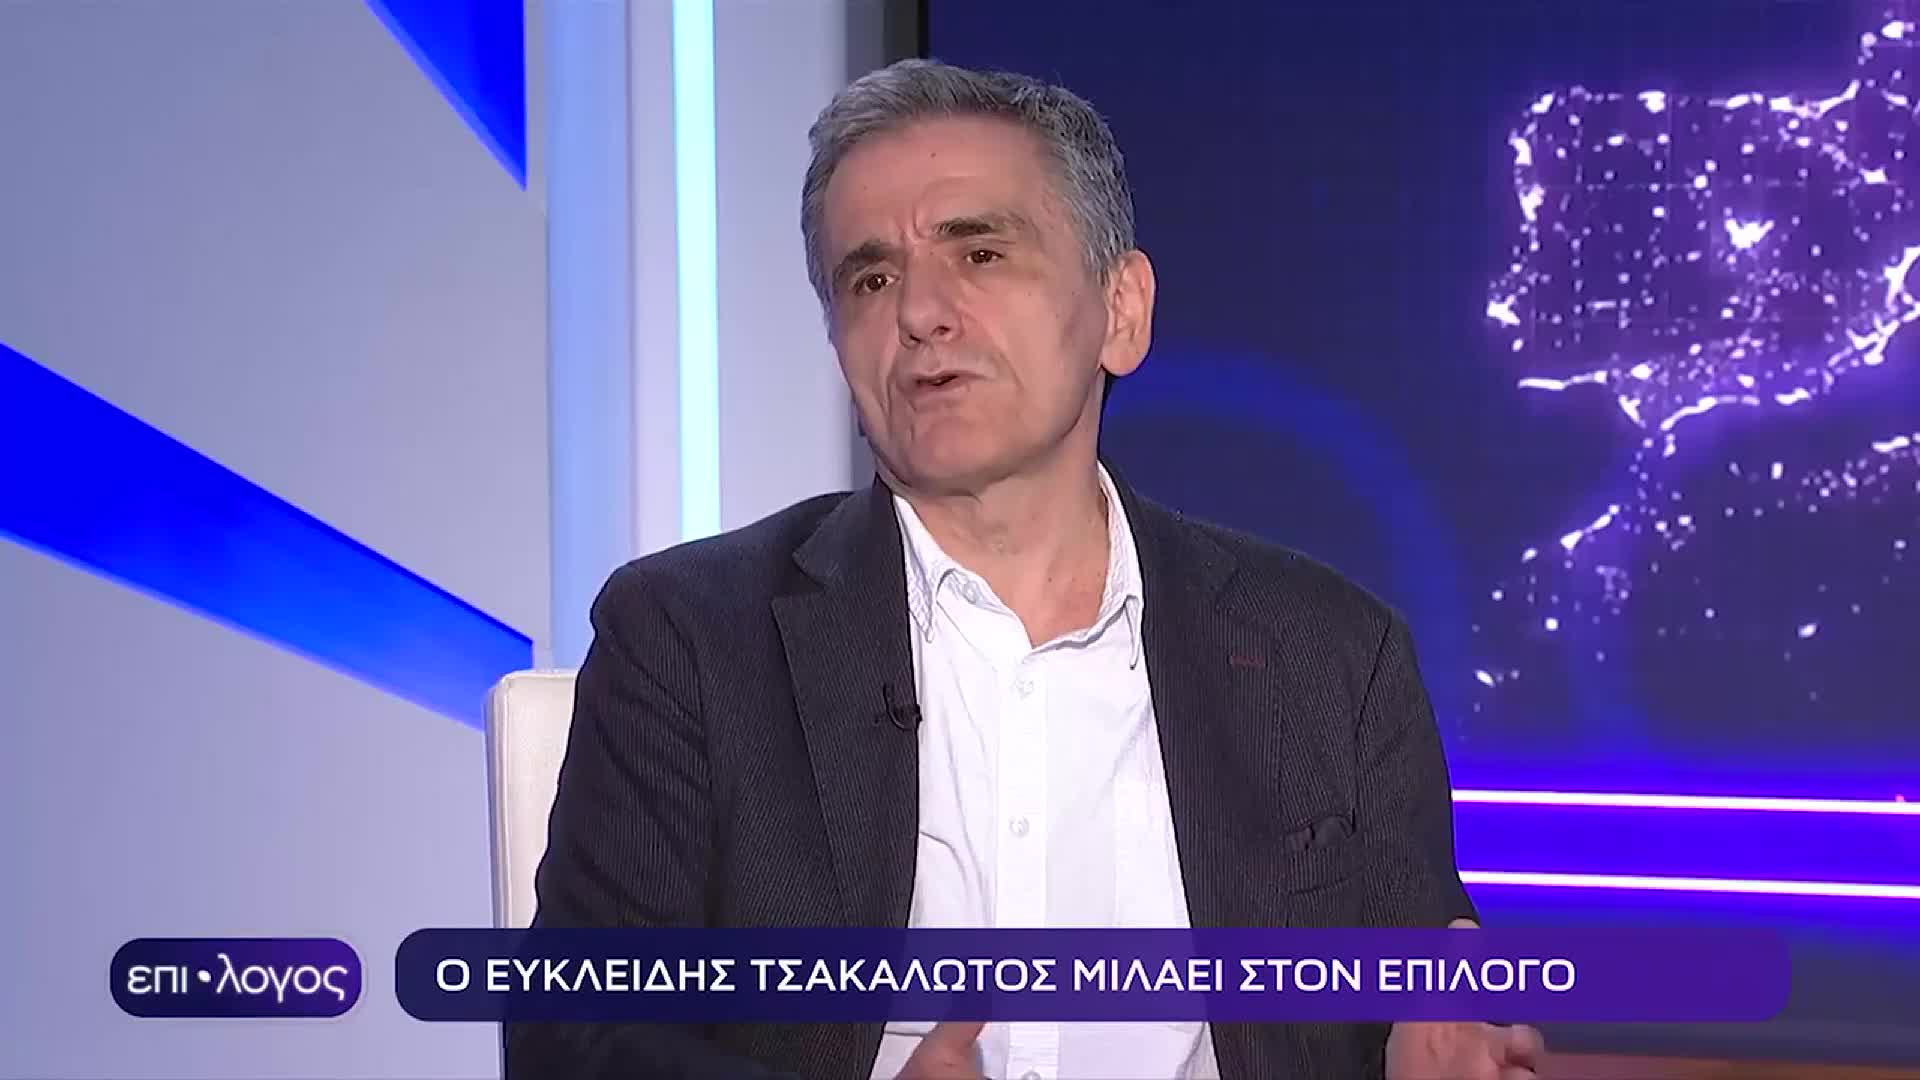 «Εάν έχεις 47, 48, 49%, τι πάει να πει κυβέρνηση ηττημένων;», δήλωσε ο Ευκλείδης Τσακαλώτος, για το ενδεχόμενο σχηματισμού κυβέρνησης συνεργασίας, ακόμη και με τον ΣΥΡΙΖΑ δεύτερο κόμμα / Βίντεο: ΕΡΤ